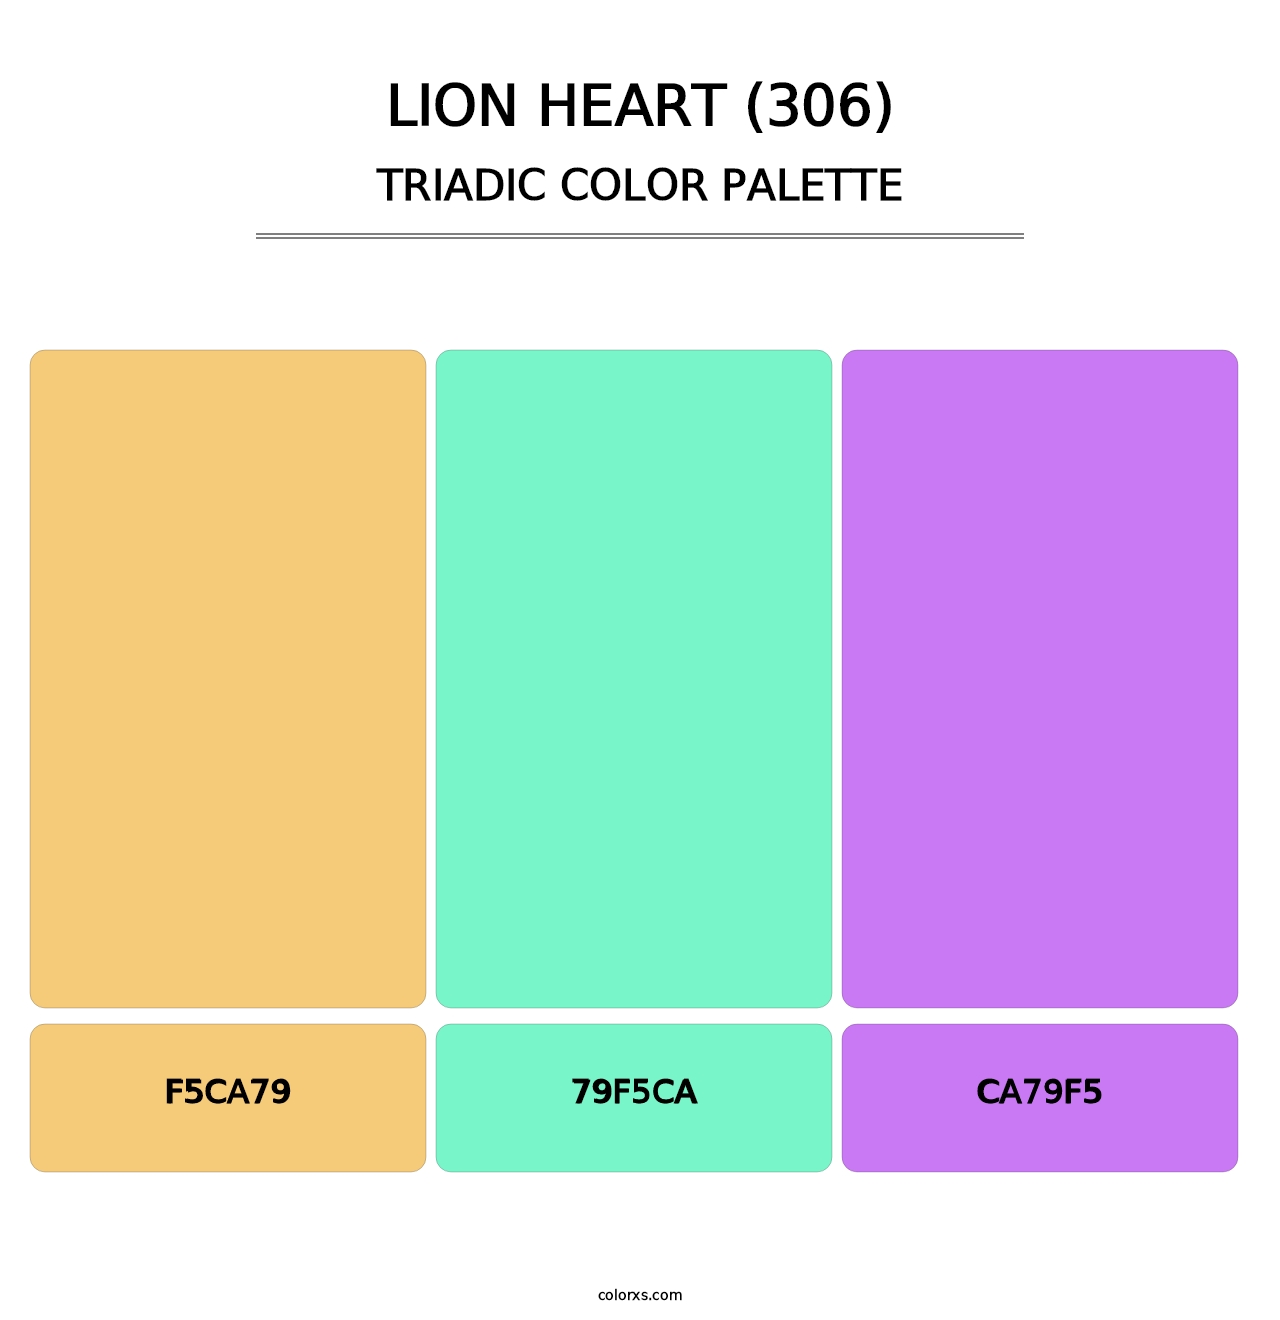 Lion Heart (306) - Triadic Color Palette